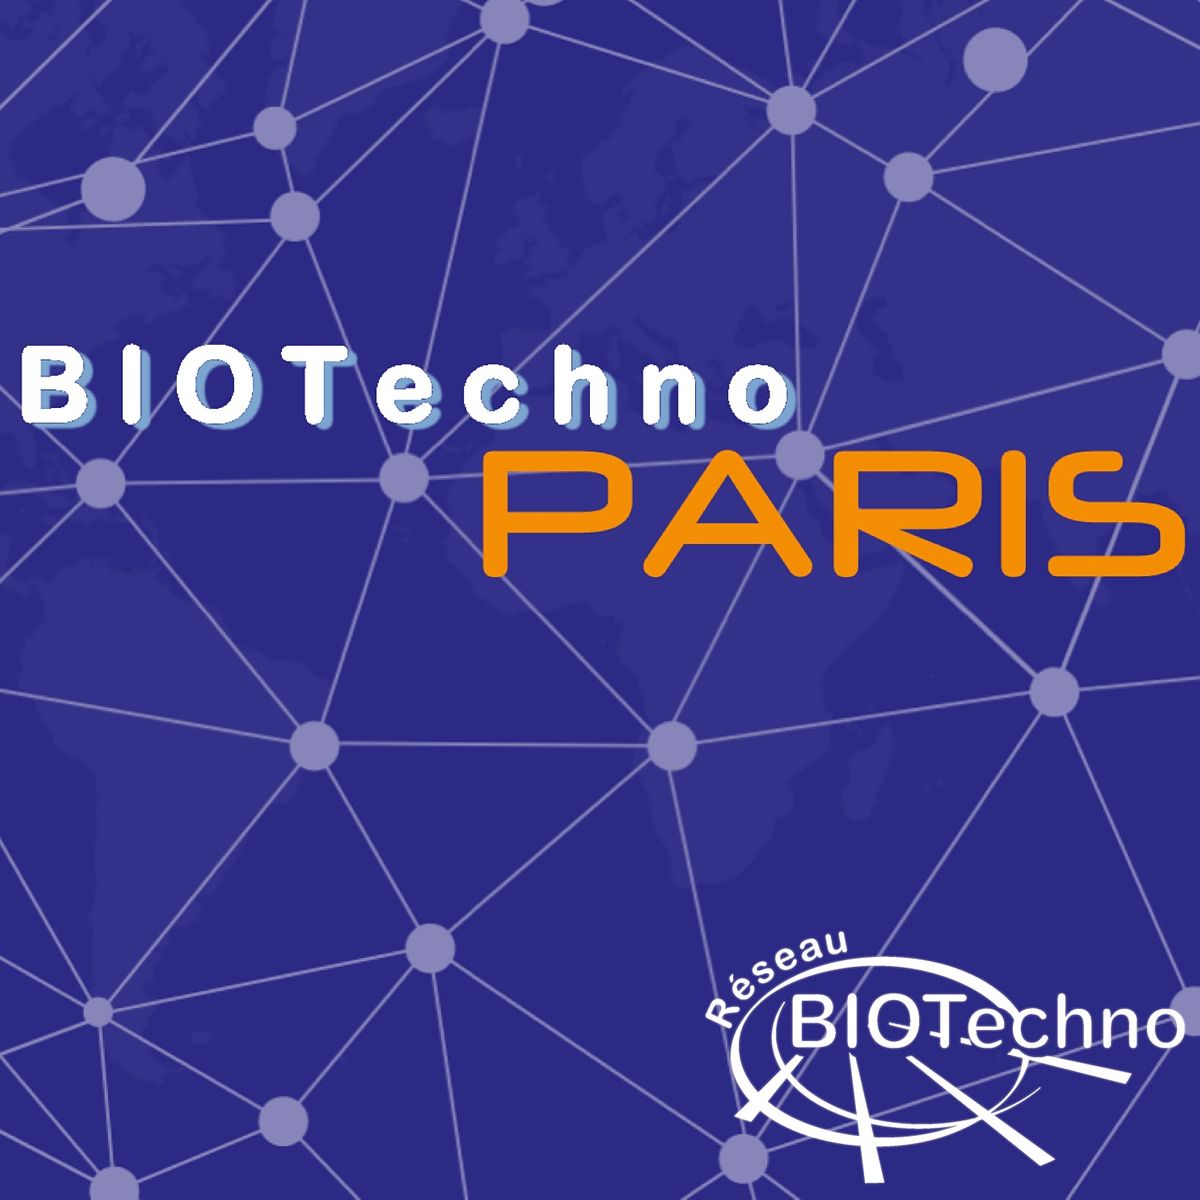 1\u00e8re r\u00e9union Biotechno Paris - Formation de l'\u00e9quipe 2022